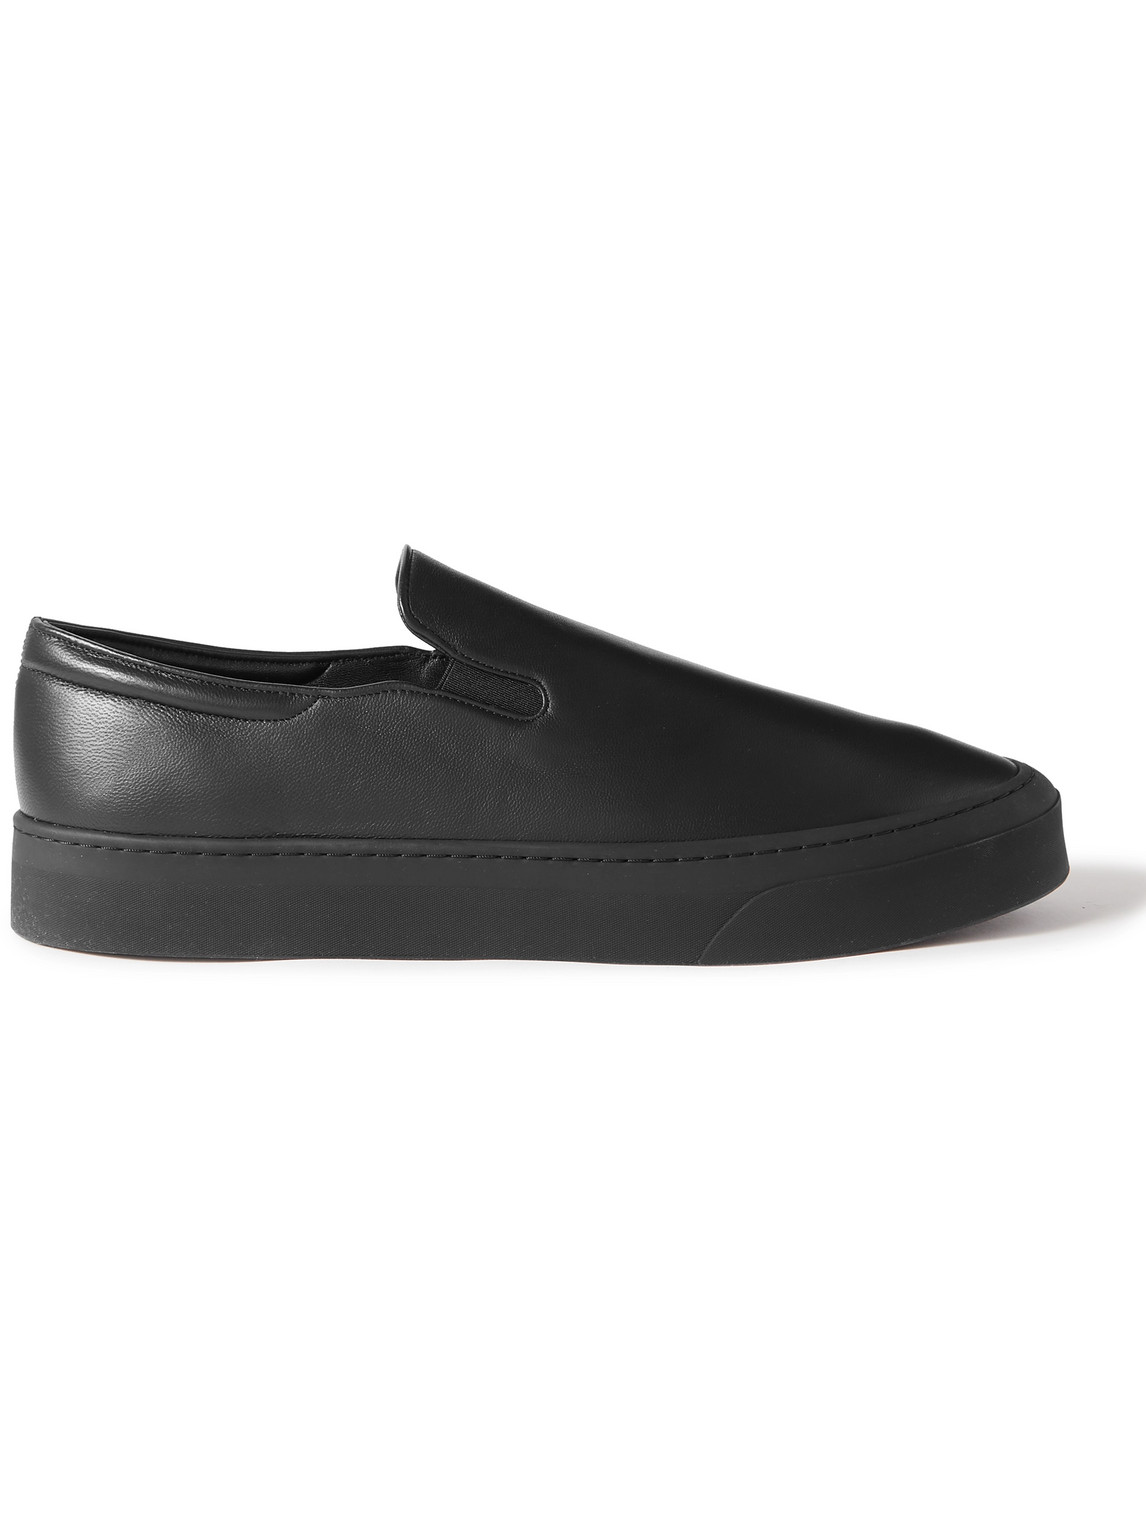 The Row - Dean Leather Slip-On Sneakers - Men - Black - EU 41 von The Row